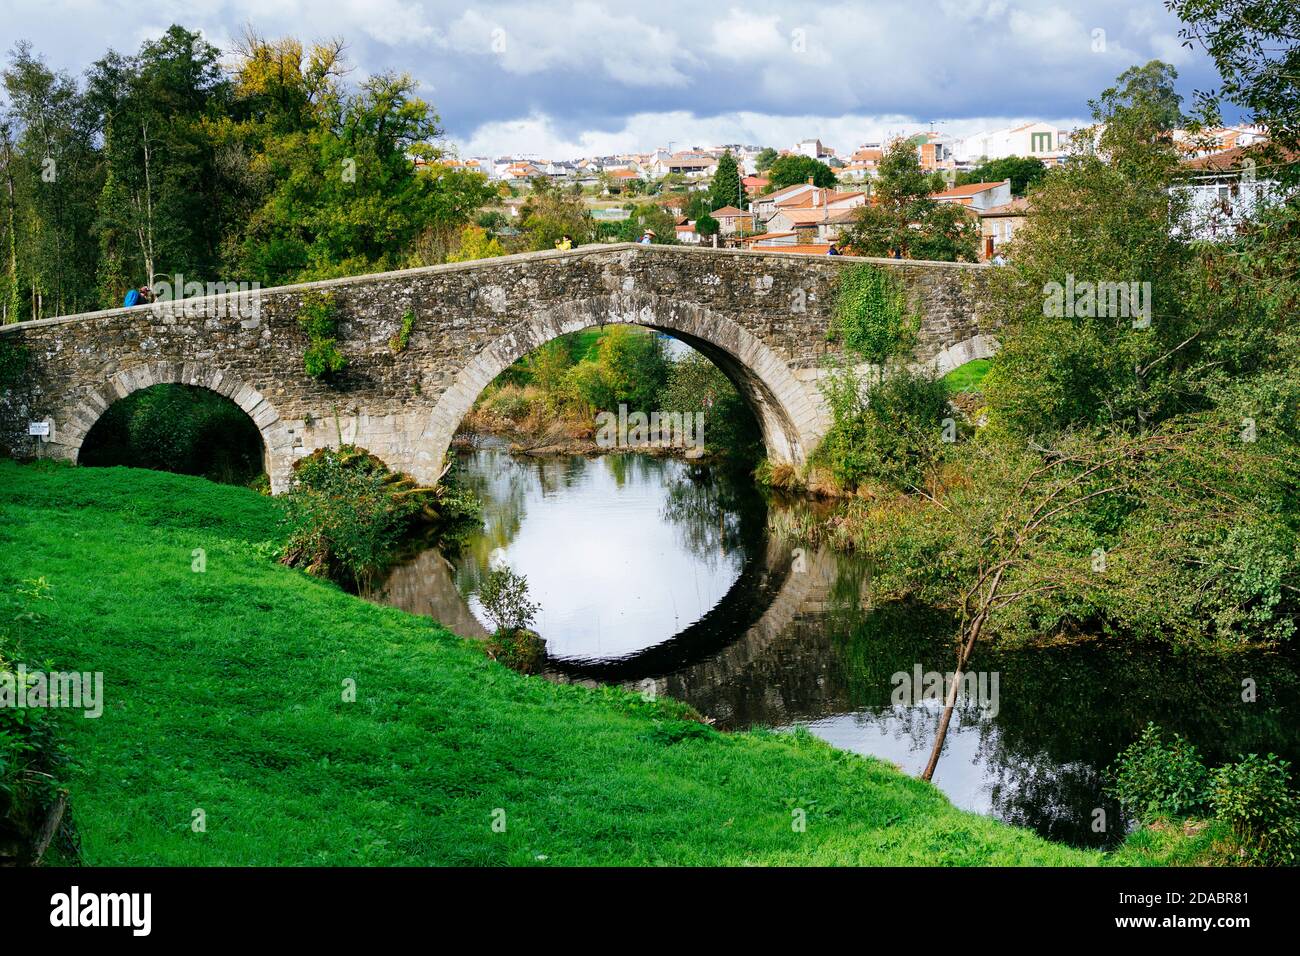 Brücke San Xoán de Furellos. Mittelalterliche Brücke über den Fluss Furellos, gilt als eines der Juwelen der zivilen Architektur des Weges. Französisch Weg, Weg Stockfoto